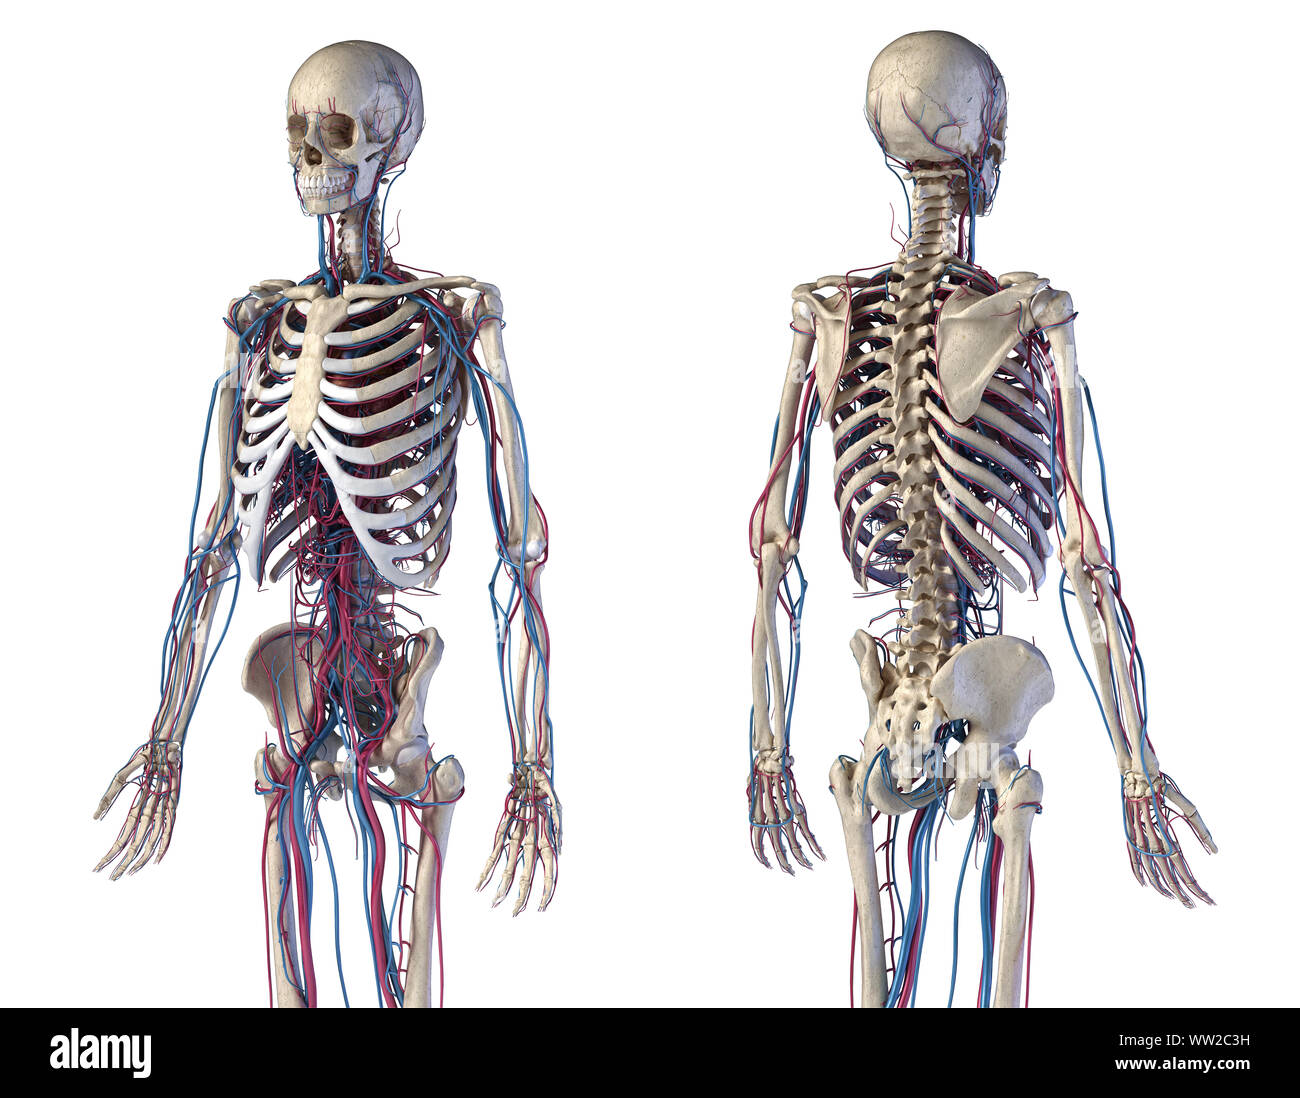 Menschliche Körper Anatomie. 3D-Darstellung von Knochen- und Herz-Kreislauf-System. Vorder- und Rückseite perspektivischen Ansichten. Auf weissem Hintergrund. Stockfoto